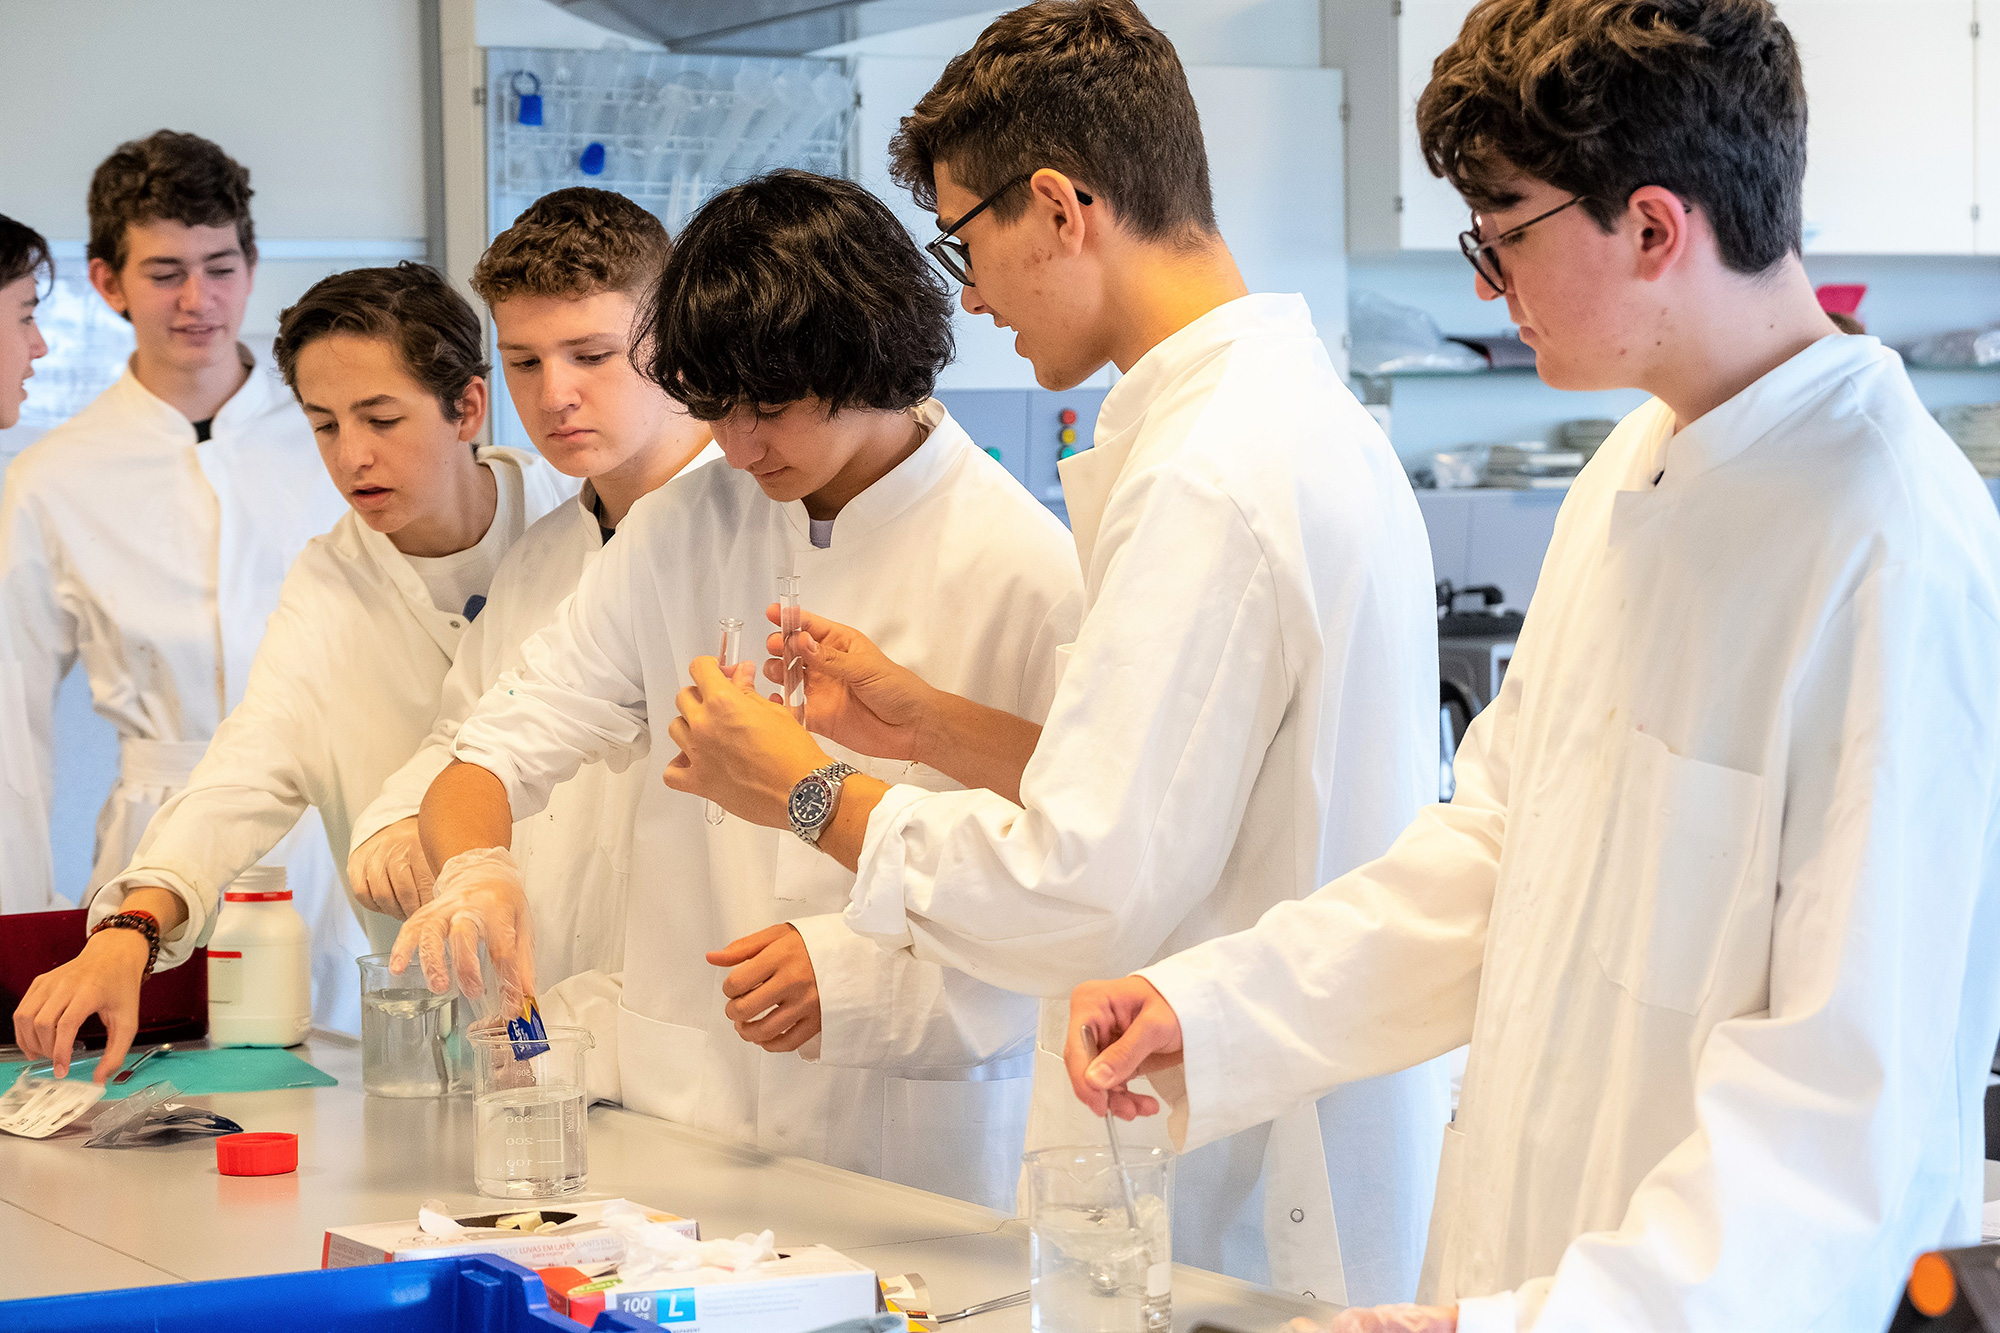 Sieben Studenten sind im Labor und experimentieren gemeinsam. Sie tragen alle einen weissen Kittel.	